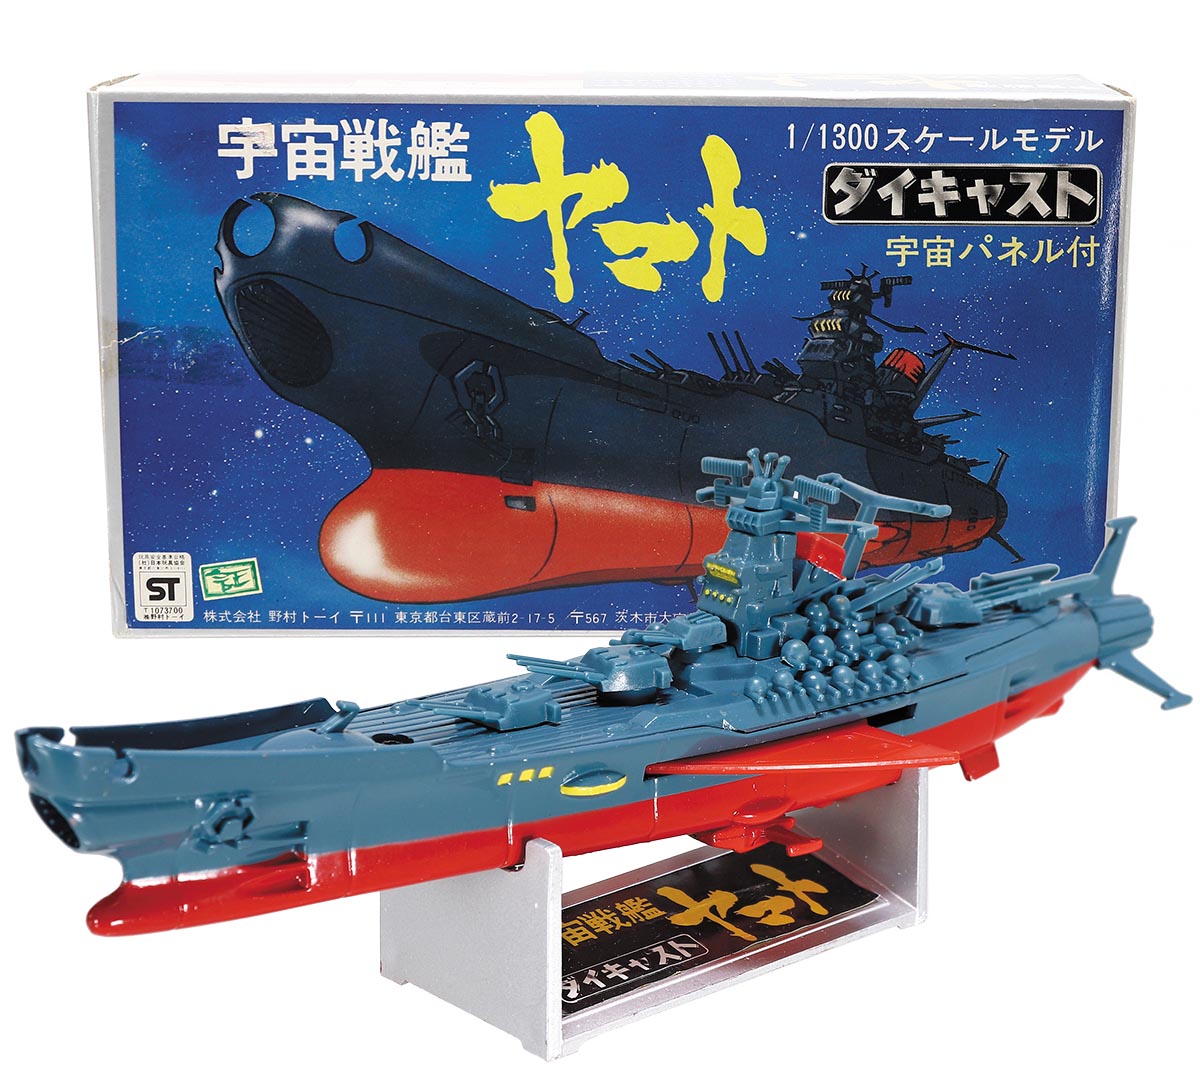 宇宙戦艦ヤマト ダイキャスト 野村トーイ製 1 1300 - 模型